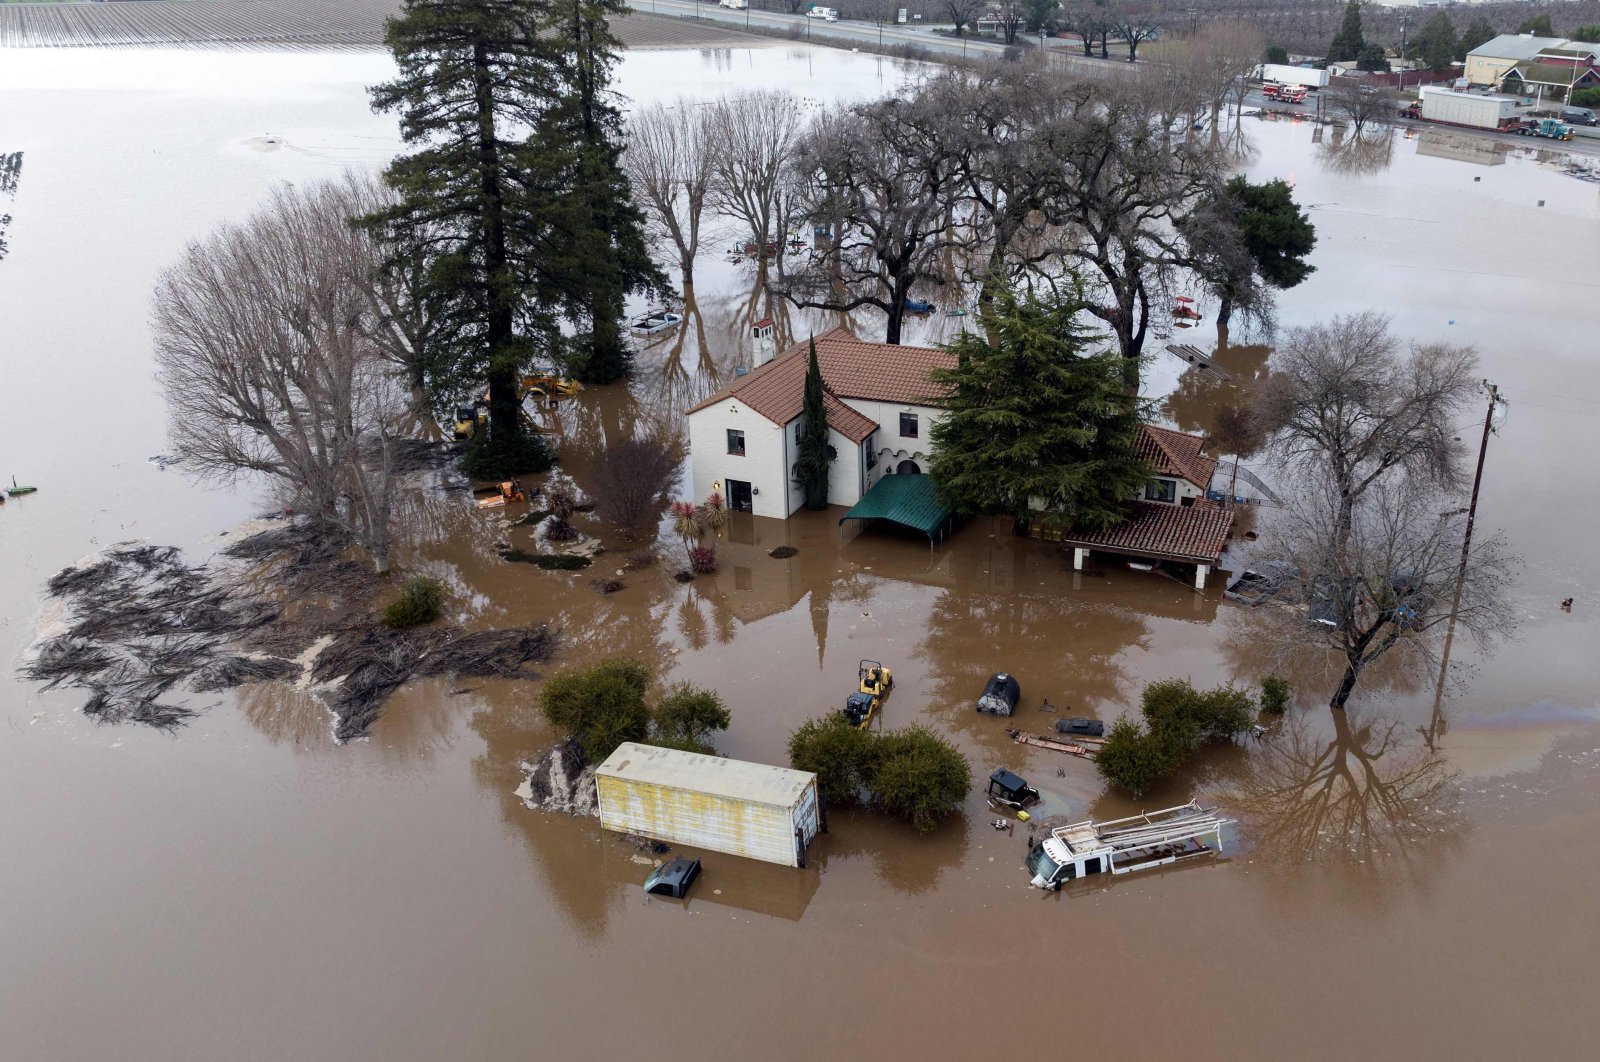 Serangkaian badai membuat California tenggelam dalam banjir, tanah longsor, lubang runtuhan